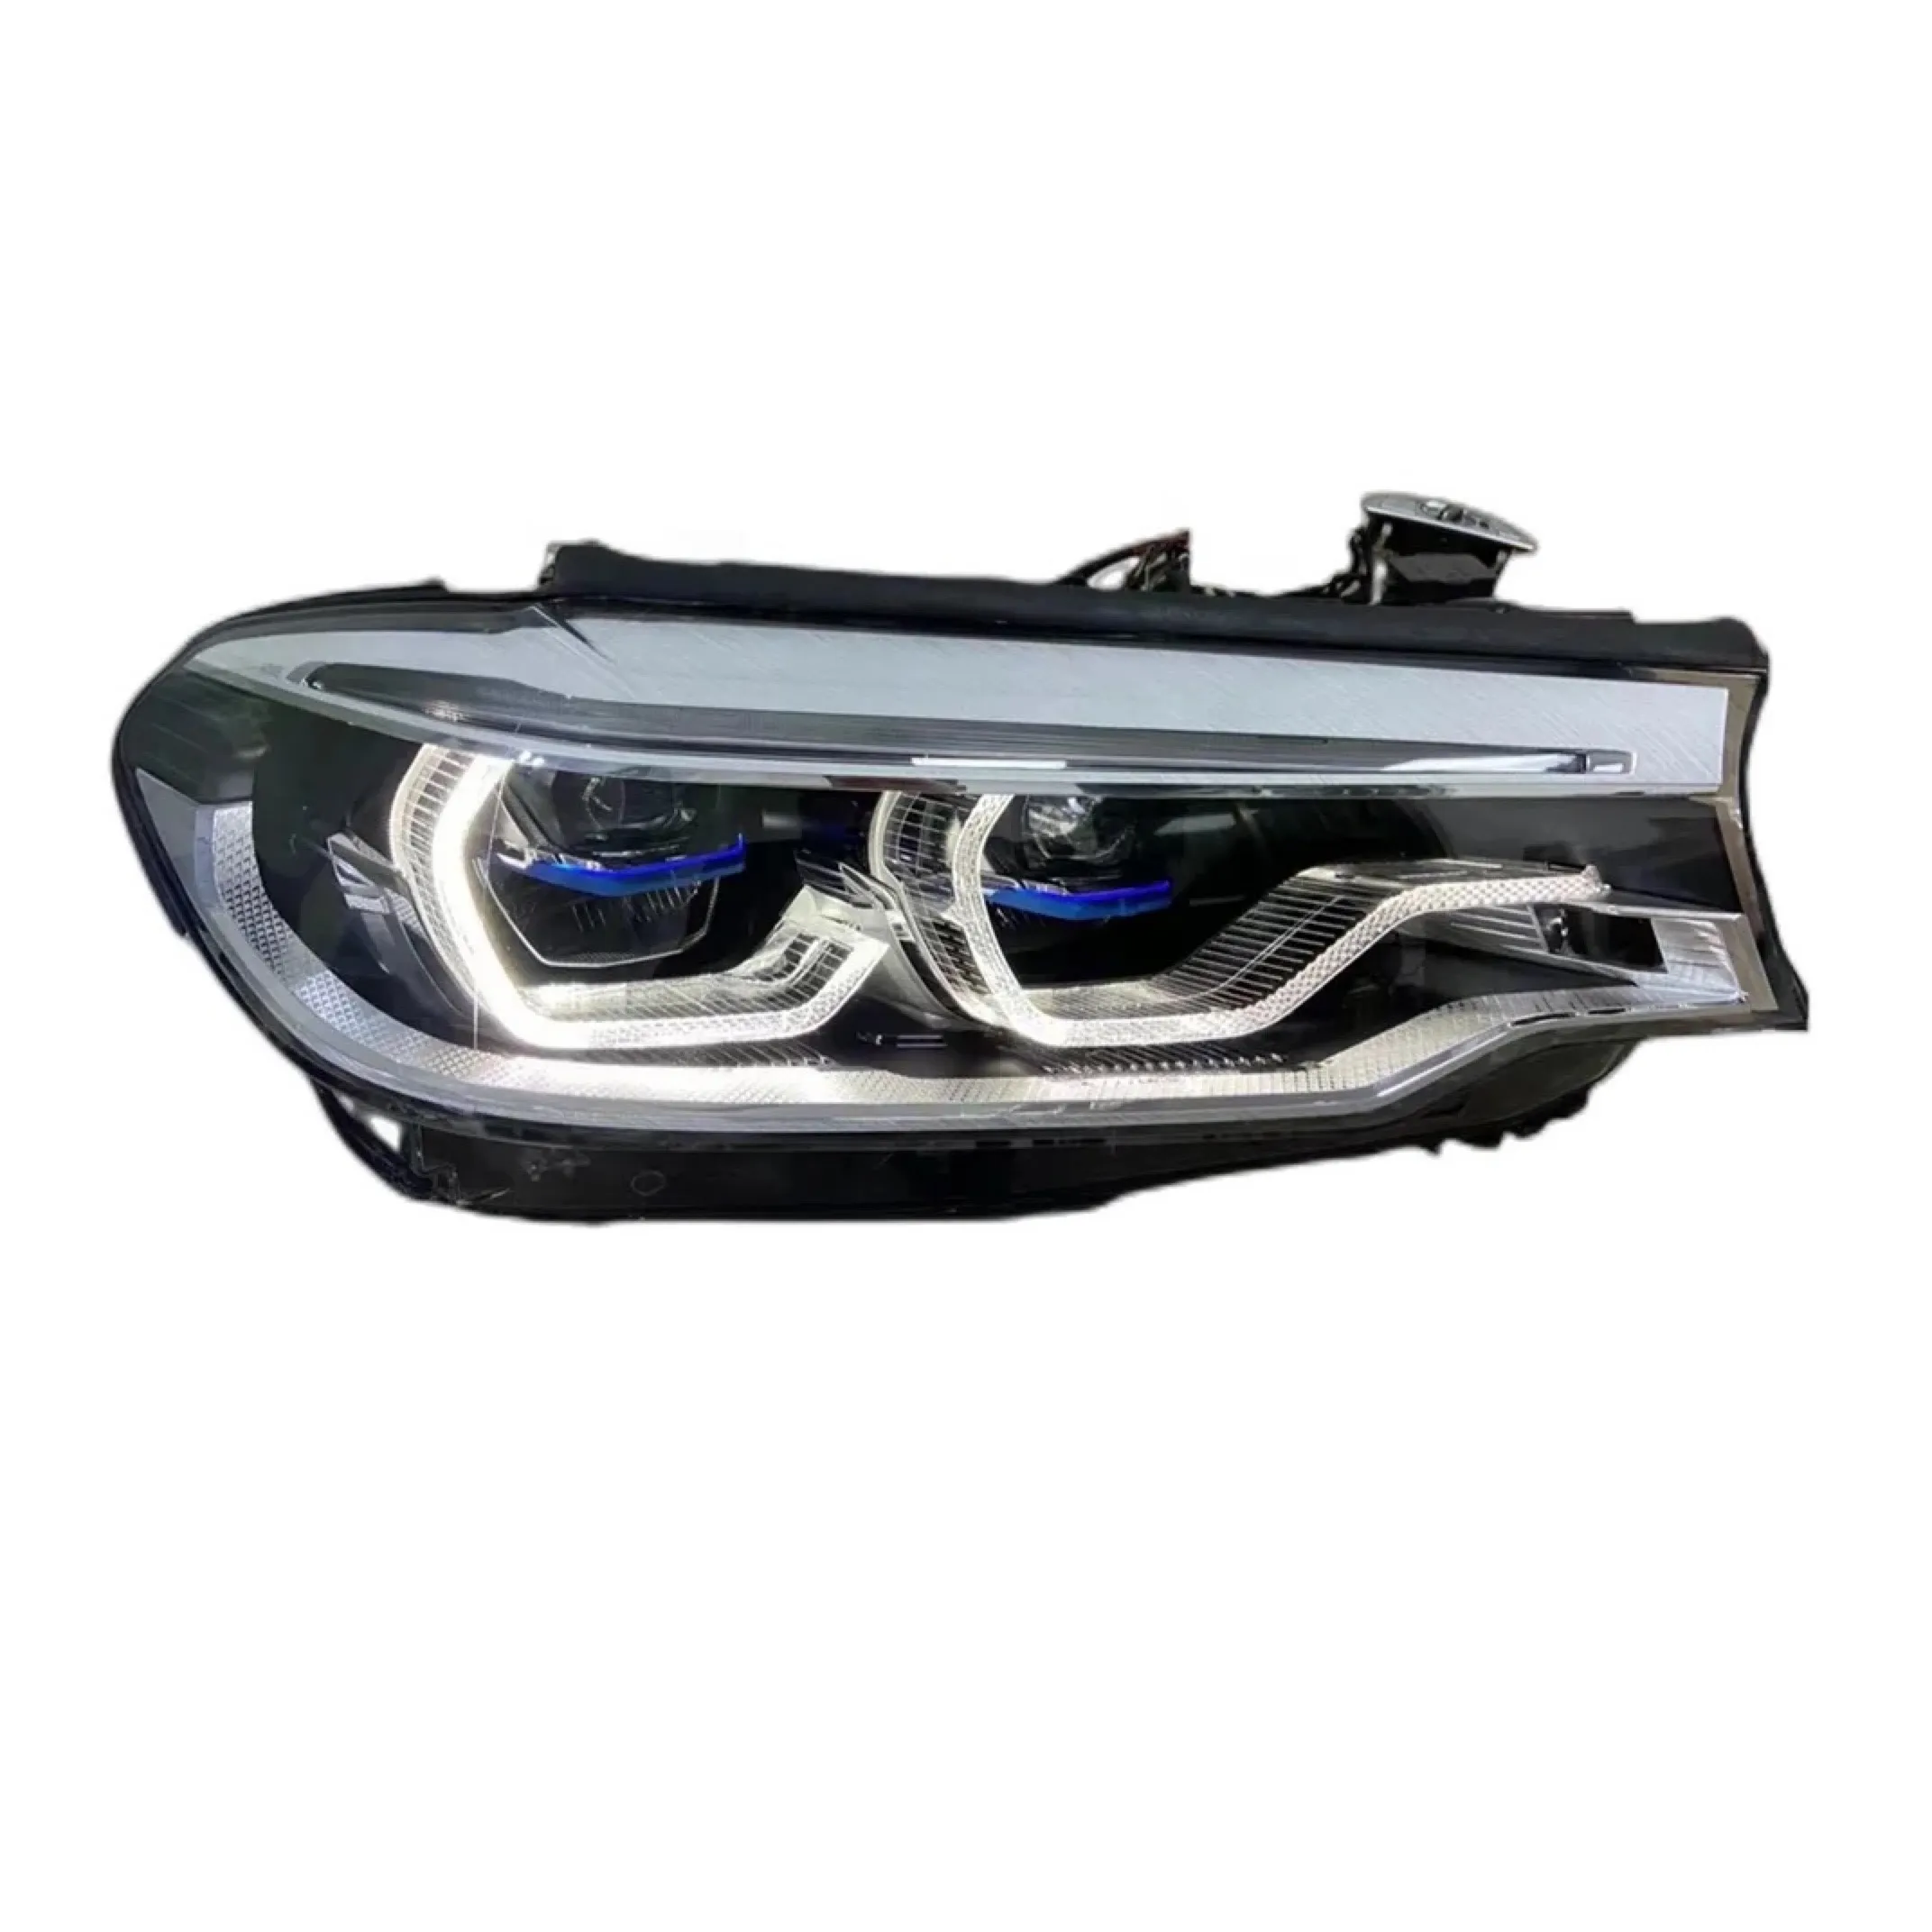 Original de Alta Qualidade 2016 2017 2018 2019 M5 G30 G38 530 540i LED Farol Do Carro Sistema de Iluminação do Farol OEM para BMW Série 5